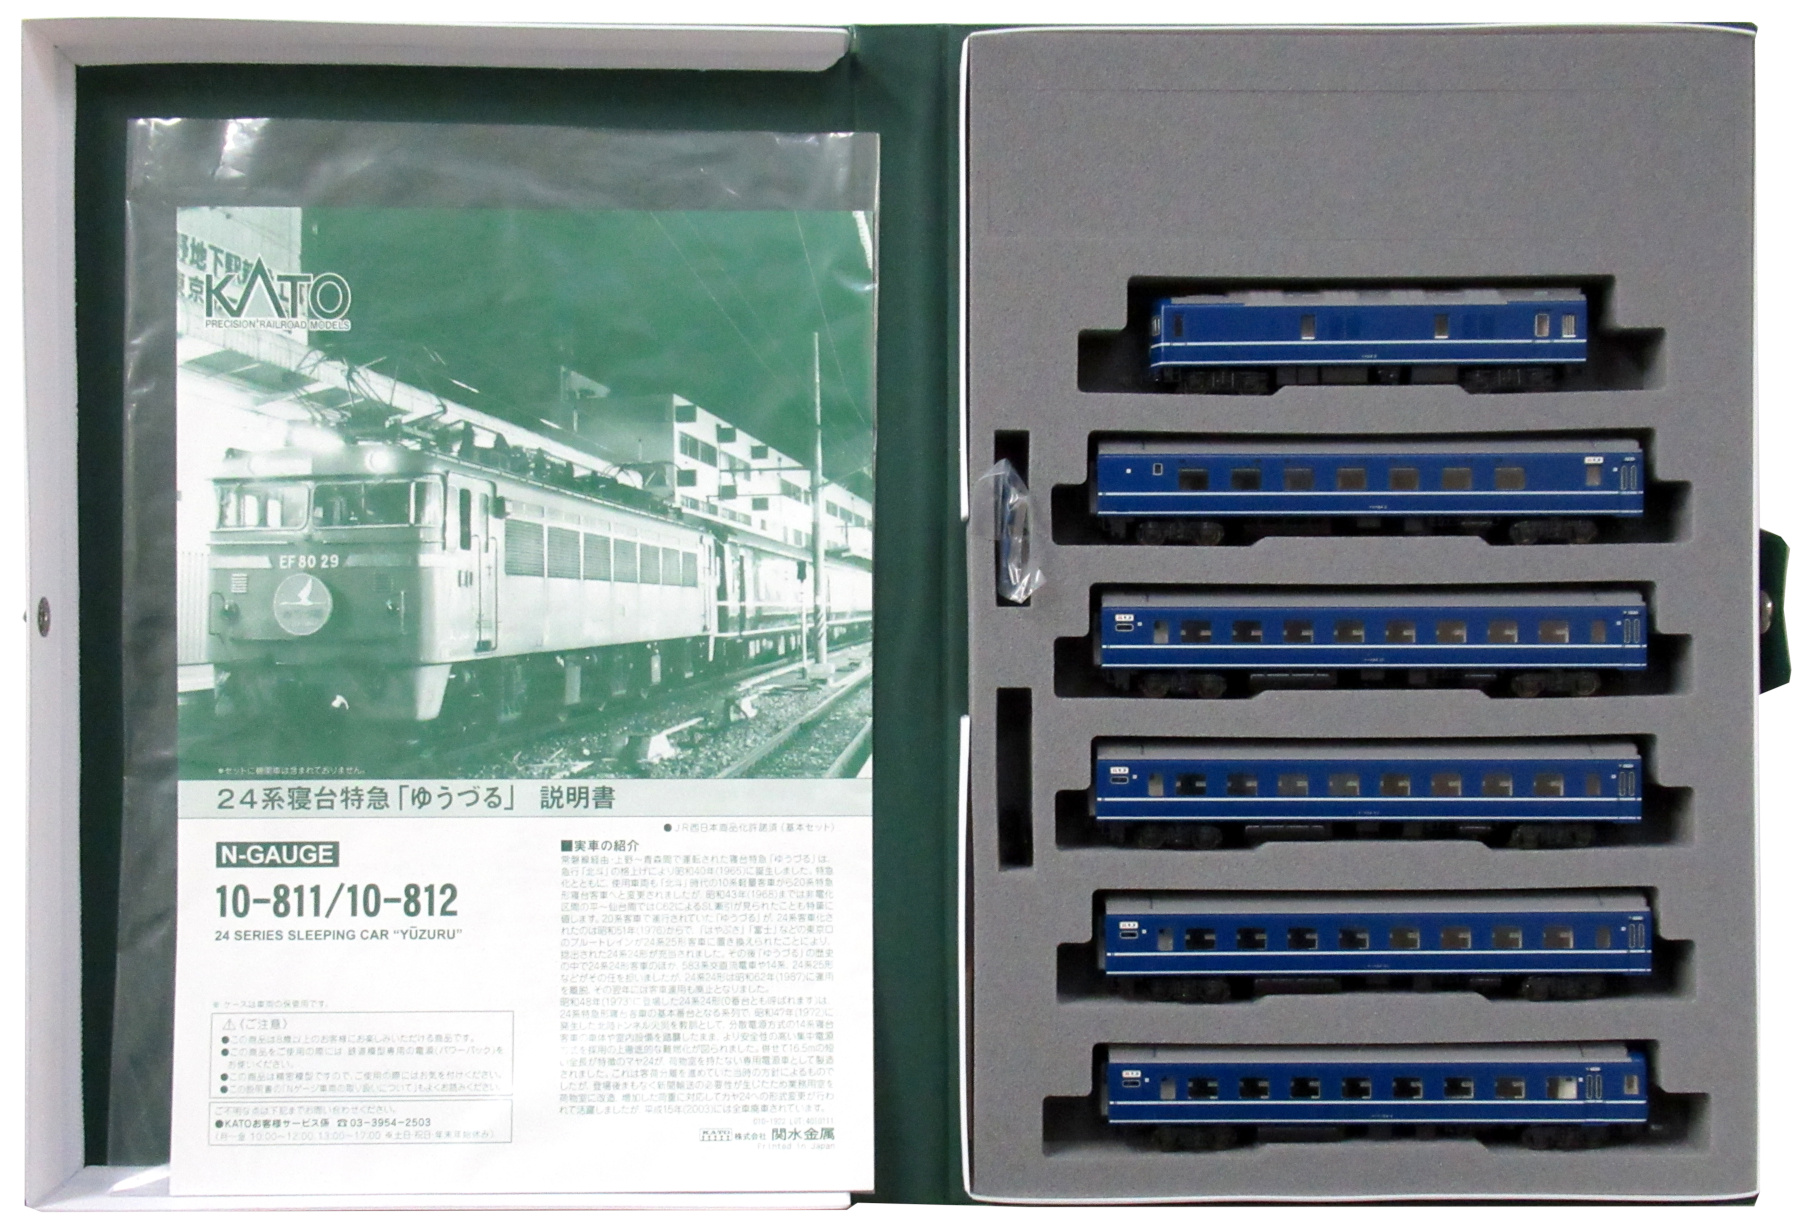 公式]鉄道模型(10-81124系 寝台特急「ゆうづる」6両基本セット)商品